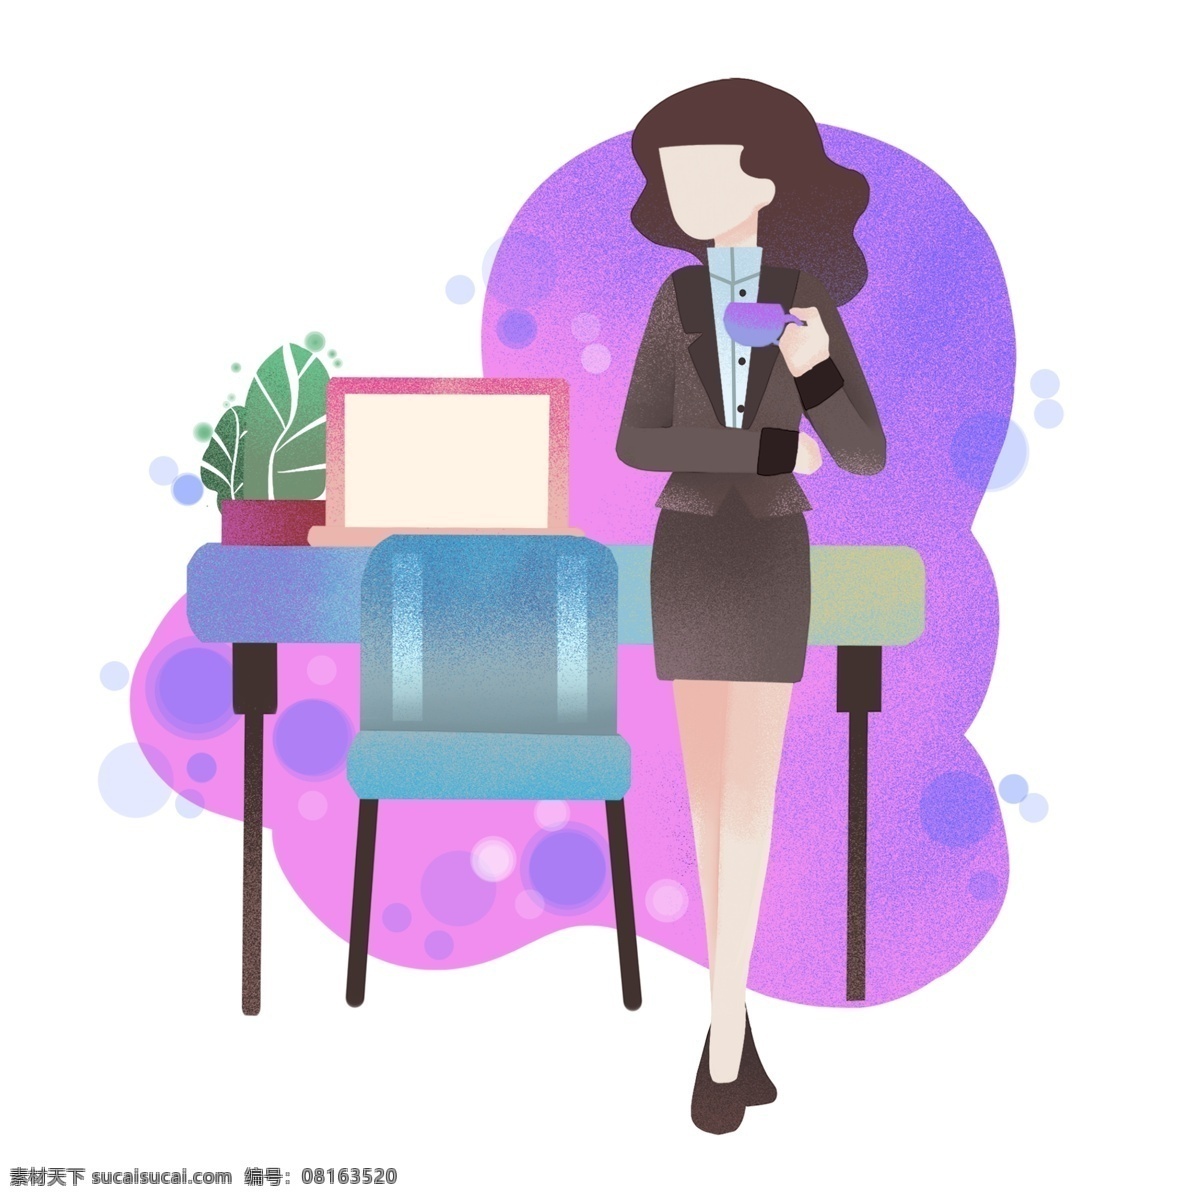 喝茶 小女孩 插画 商务办公插画 喝茶的小女孩 紫色的水杯 蓝色的凳子 绿色的盆栽 卡通人物